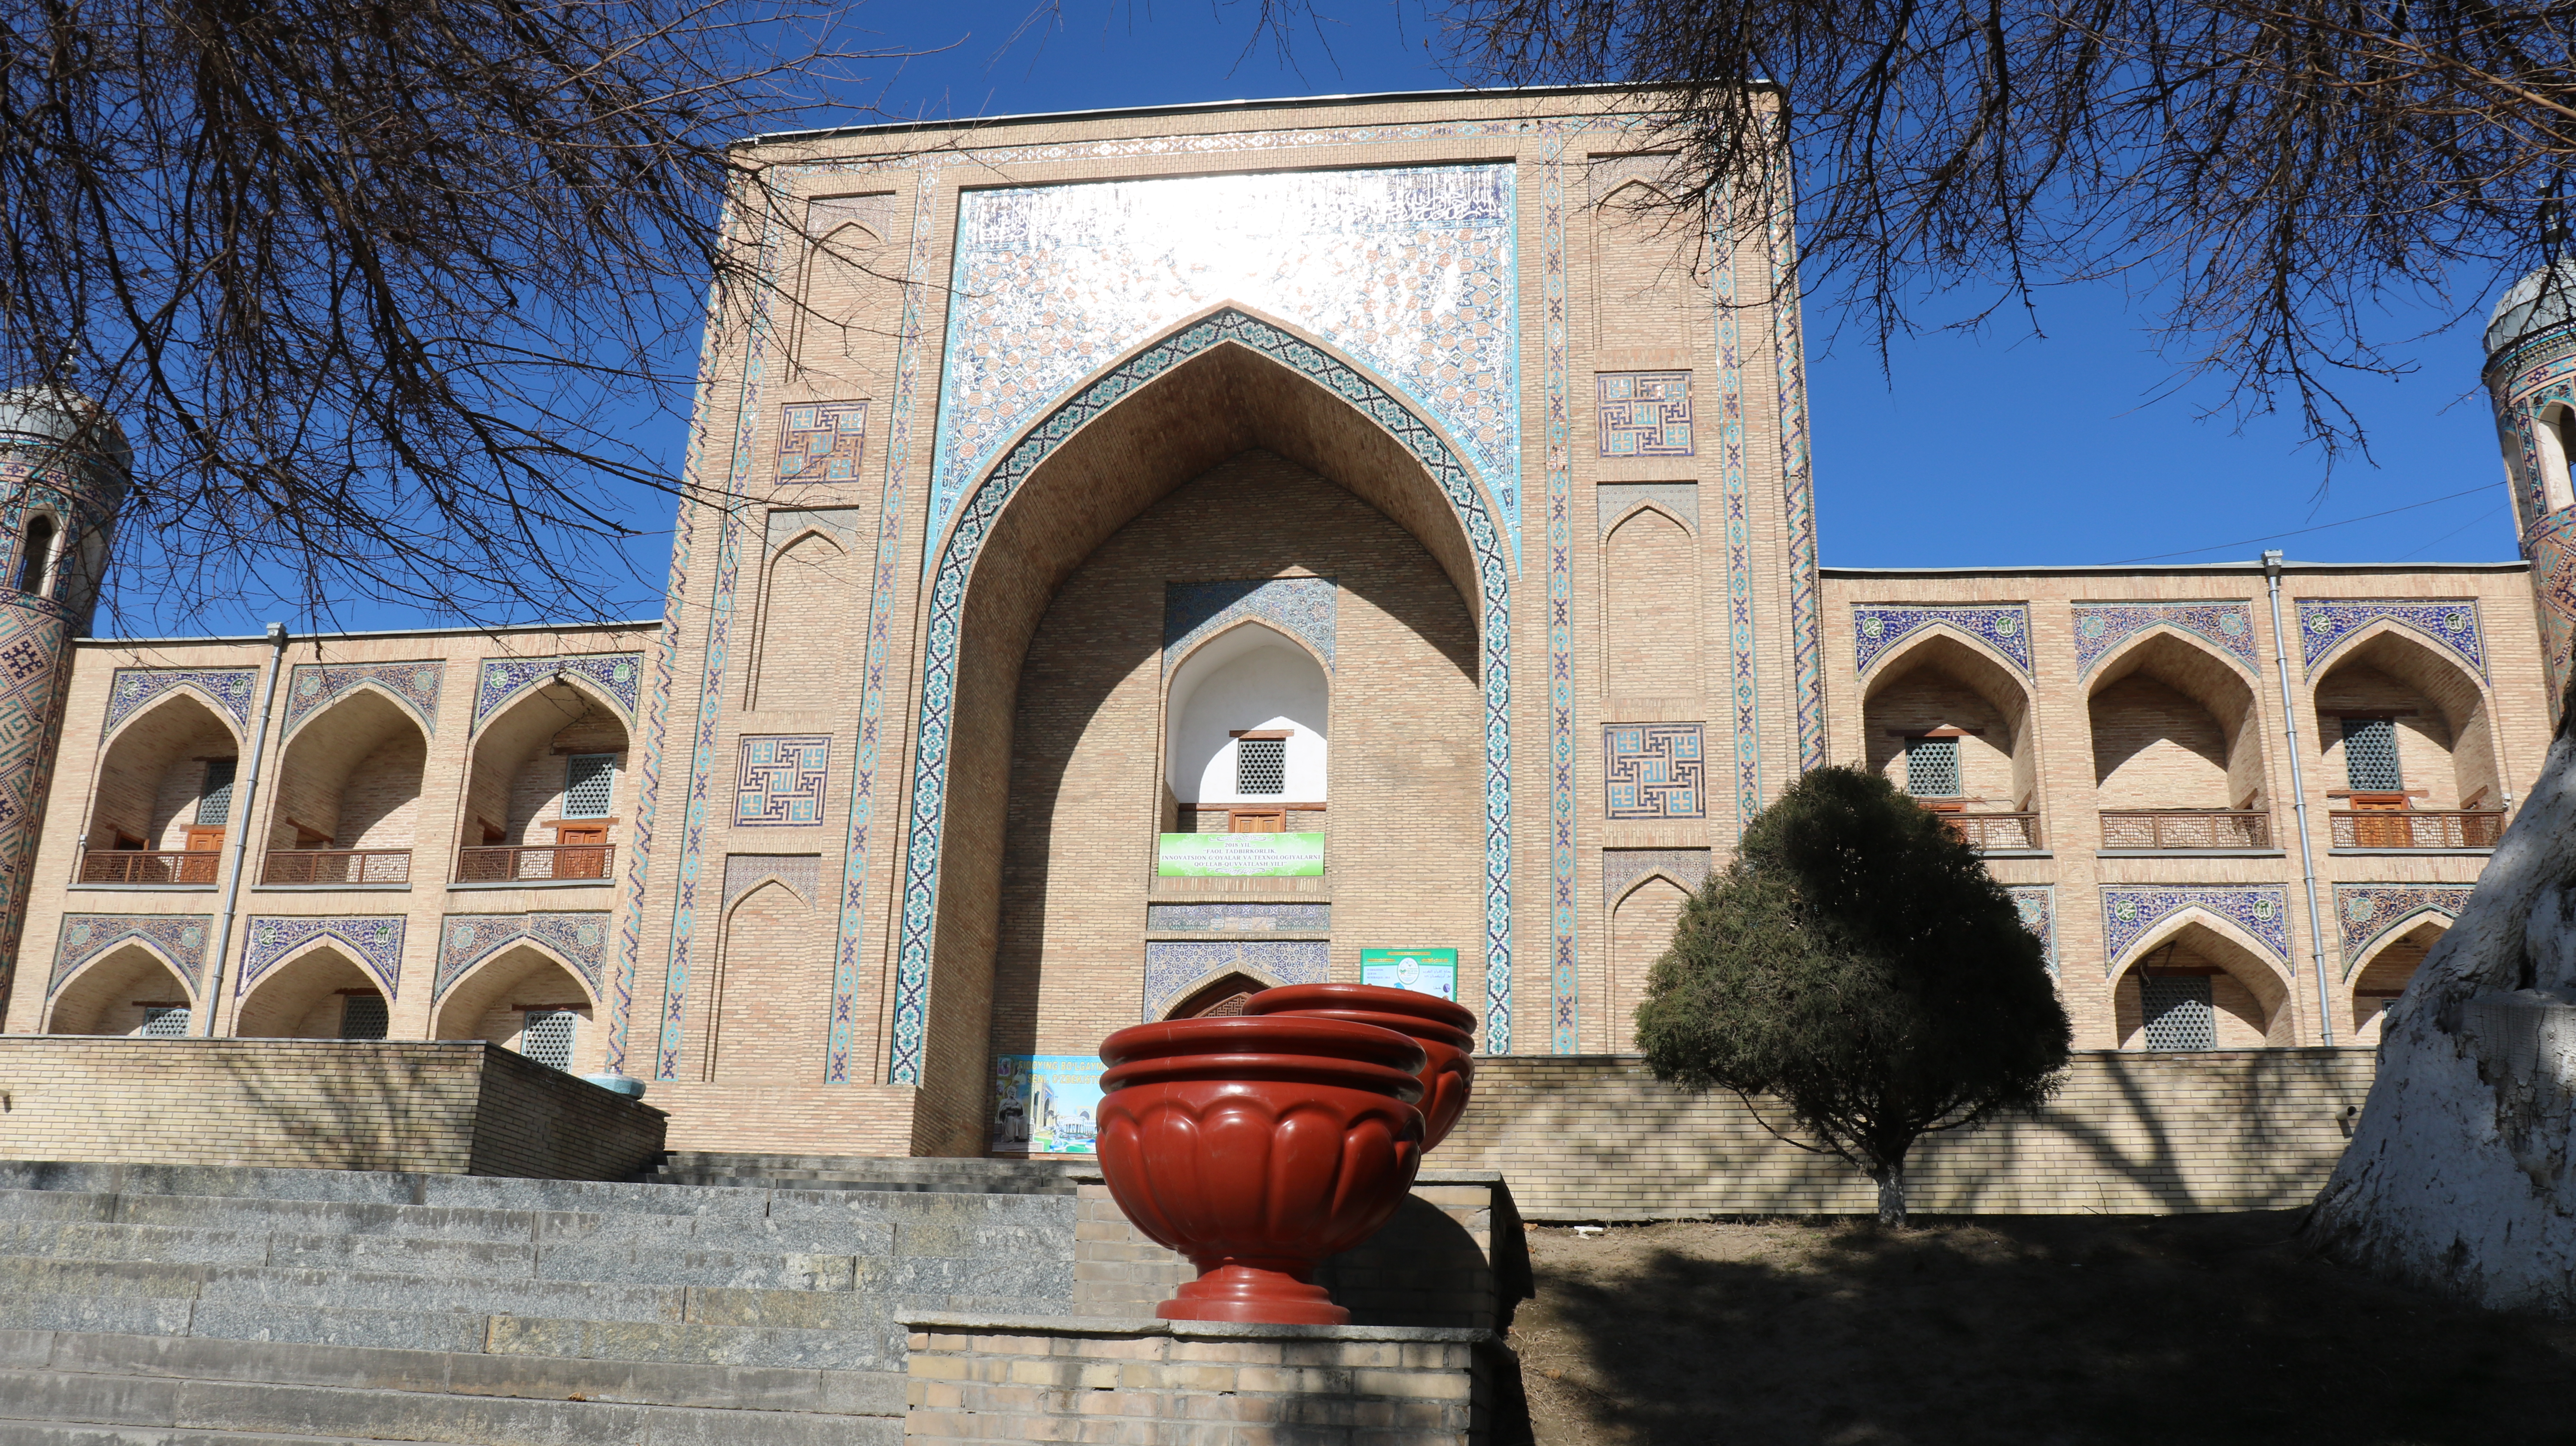 Facade of Abulkasim Medressa.